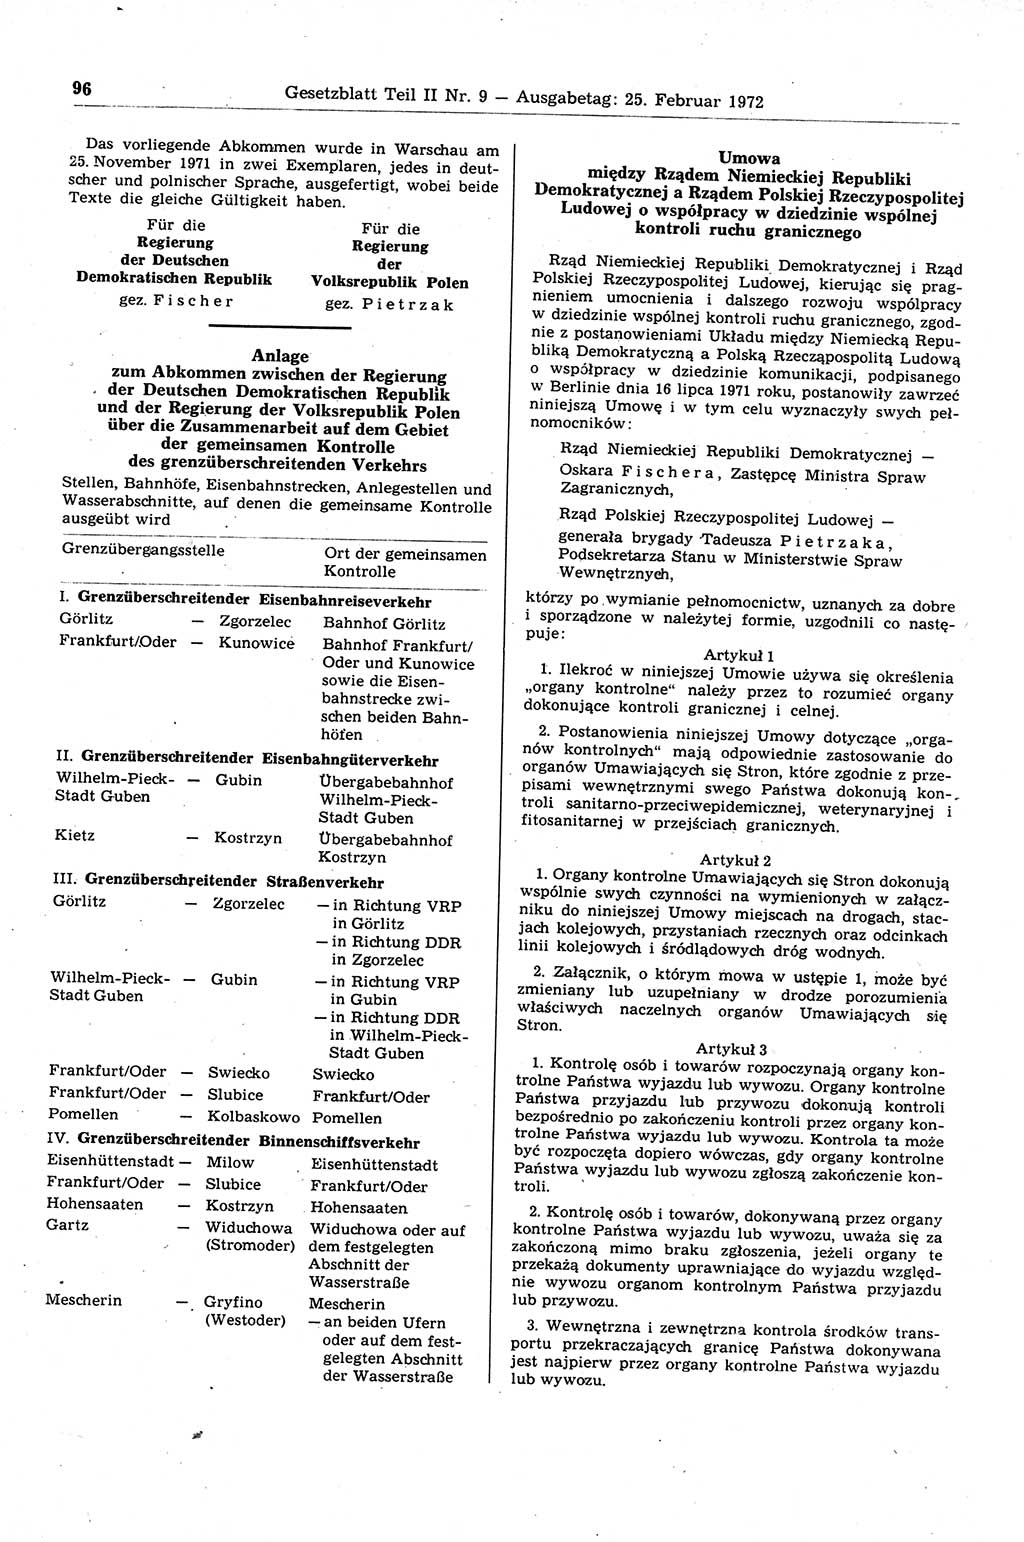 Gesetzblatt (GBl.) der Deutschen Demokratischen Republik (DDR) Teil ⅠⅠ 1972, Seite 96 (GBl. DDR ⅠⅠ 1972, S. 96)